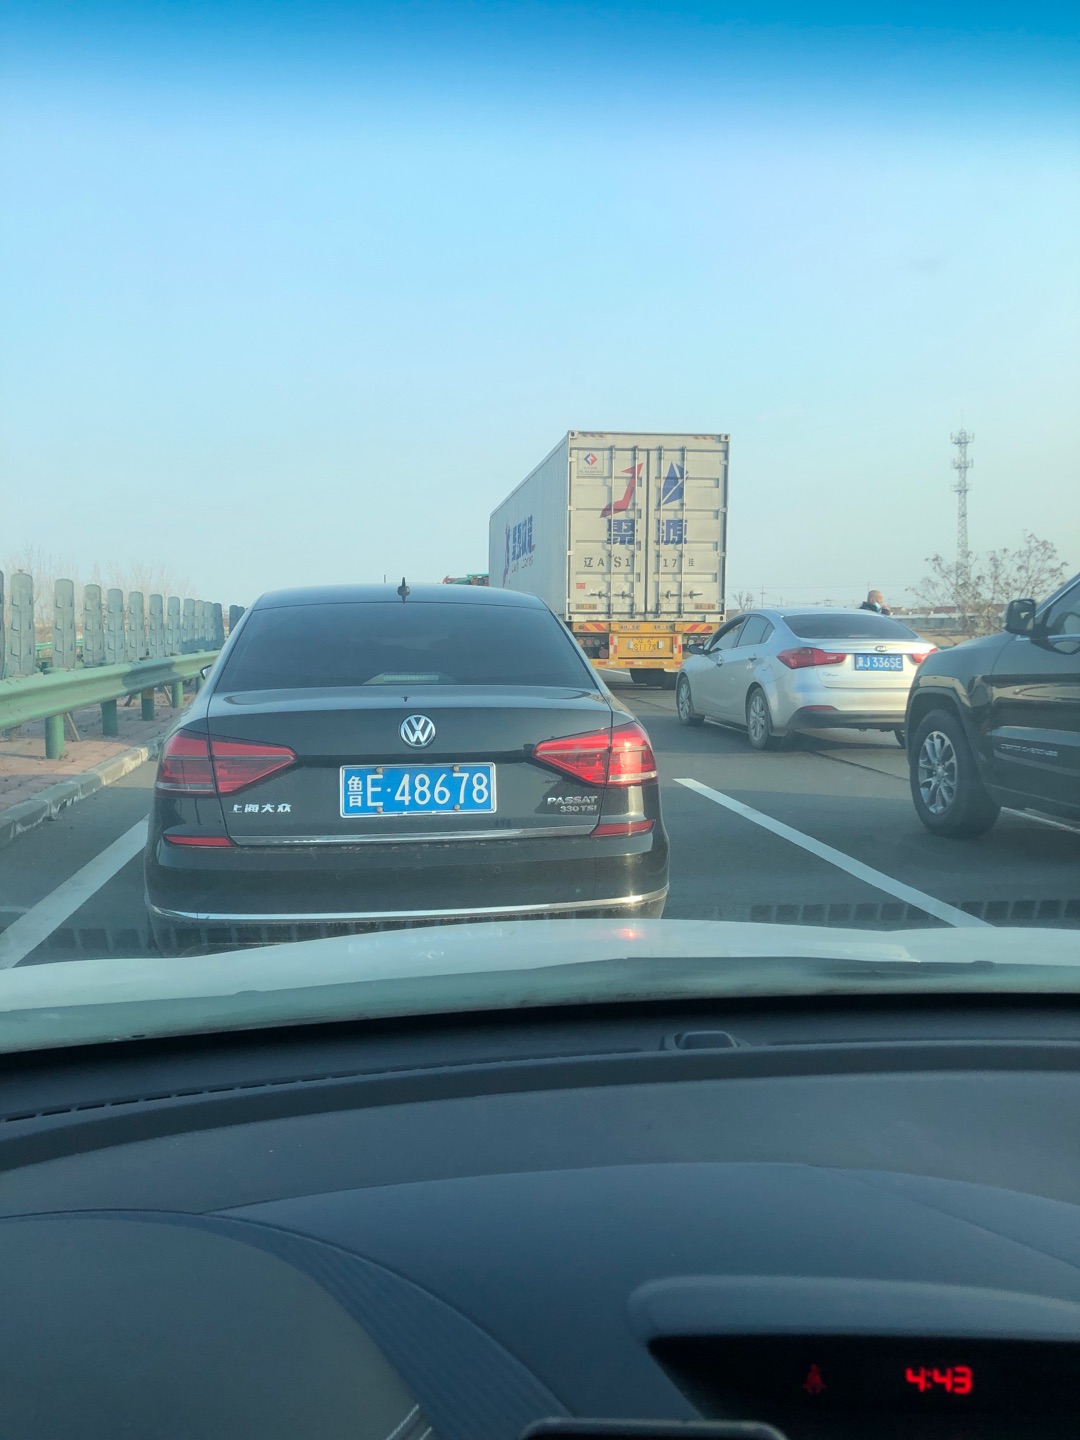 荣乌高速路况实时查询:堵车缓行,太扯了,都不知道什么